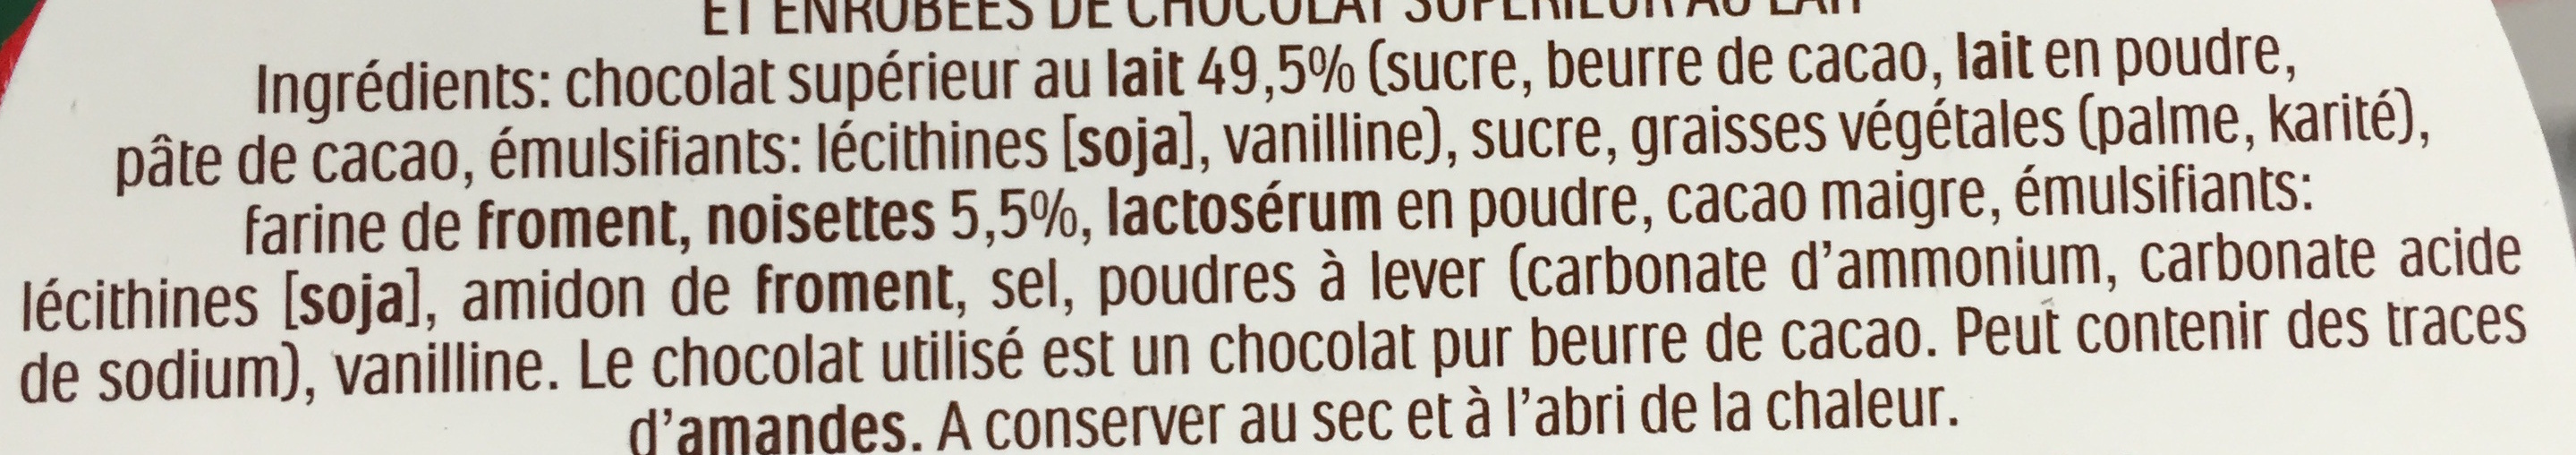 Gaufrettes recouvertes de cacao fondant aux éclats de noisettes - Ingredients - fr